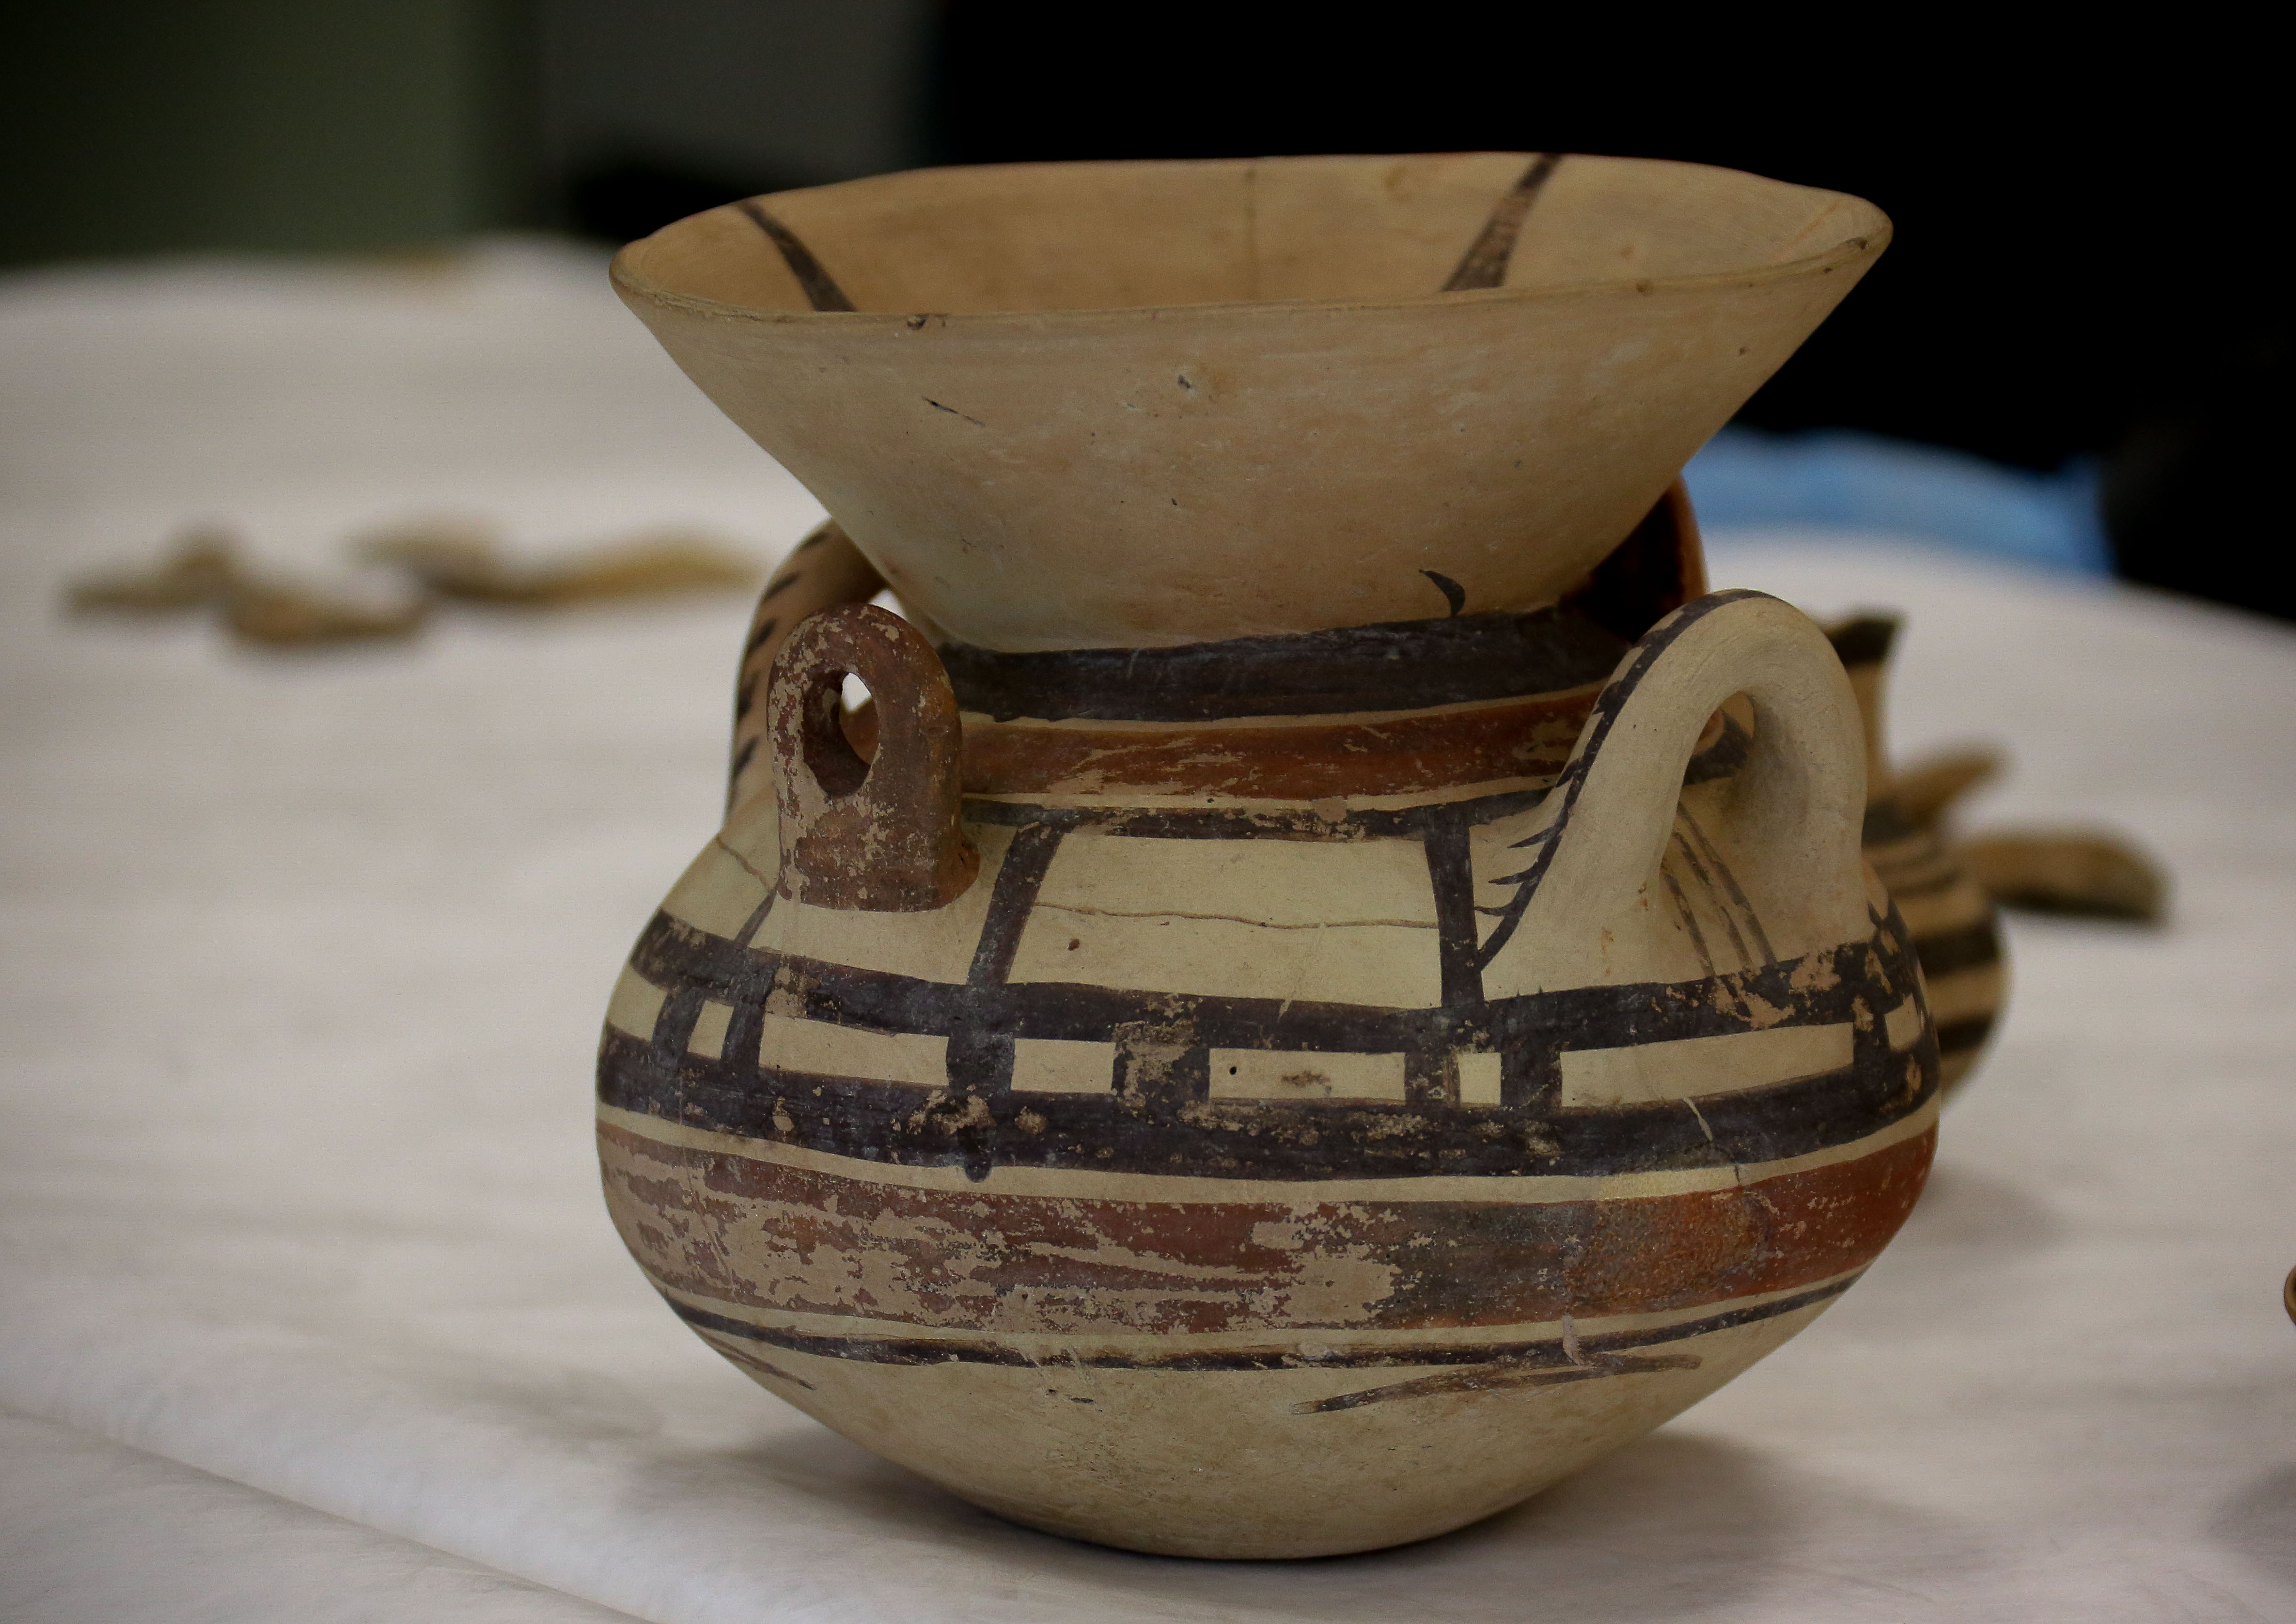 Vasos gregos encontrados na peninsula itálica no estilo geométrico, do acervo MAE-USP. foto: Cecília Bastos/Usp Imagem